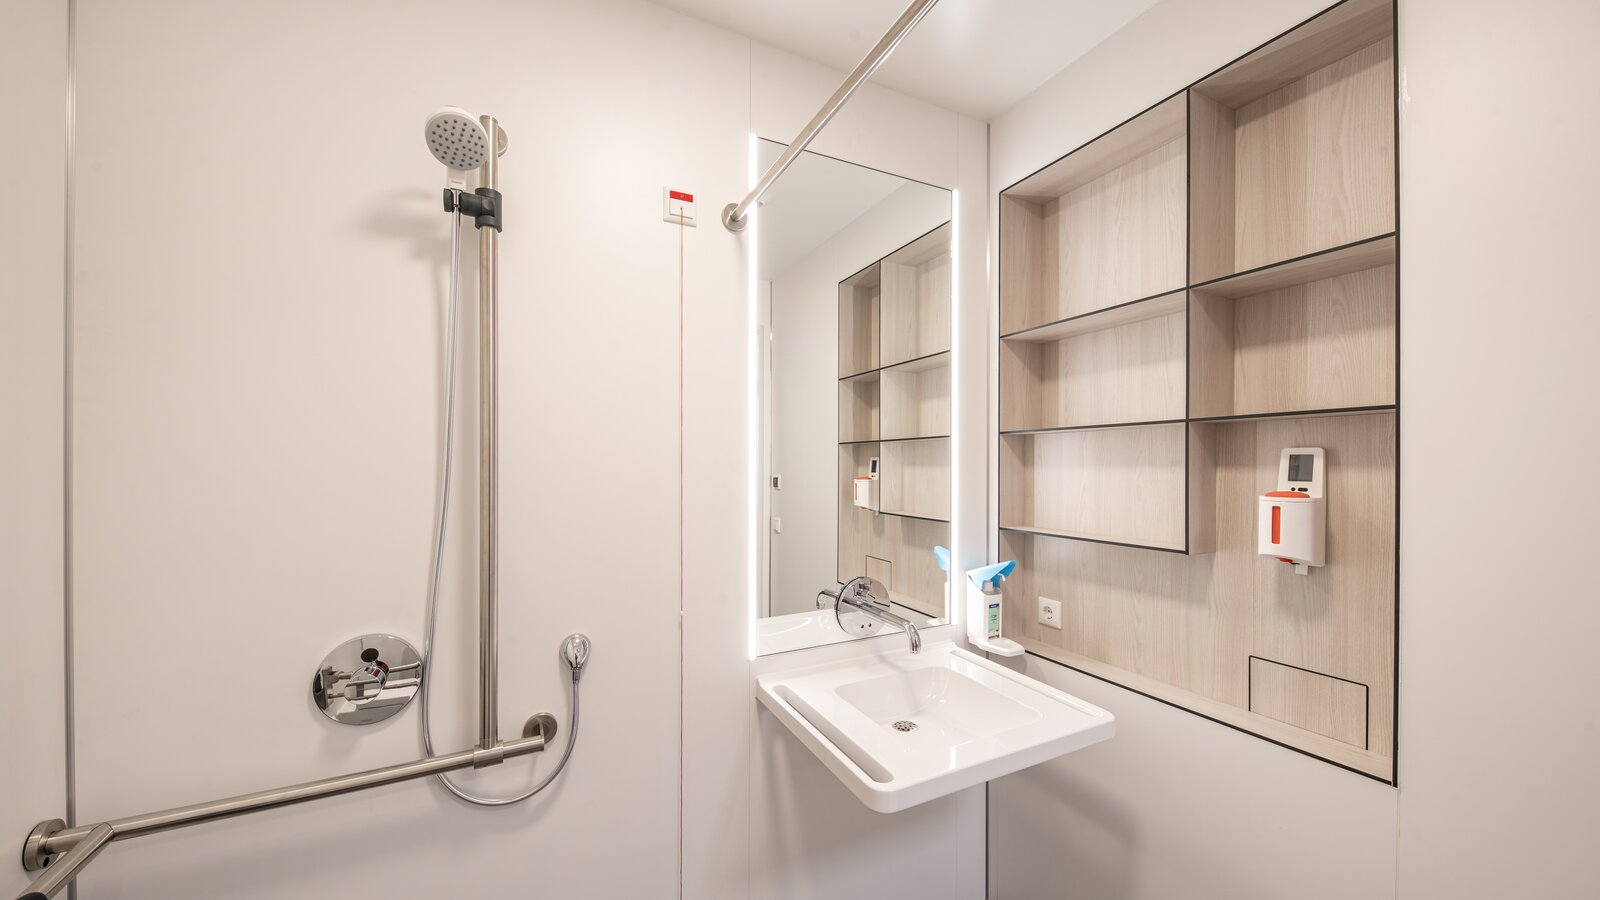 Patientenbad mit Waschplatz und Duschbereich ausgestattet mit HEWI Waschtisch und Brausehalter in Edelstahl